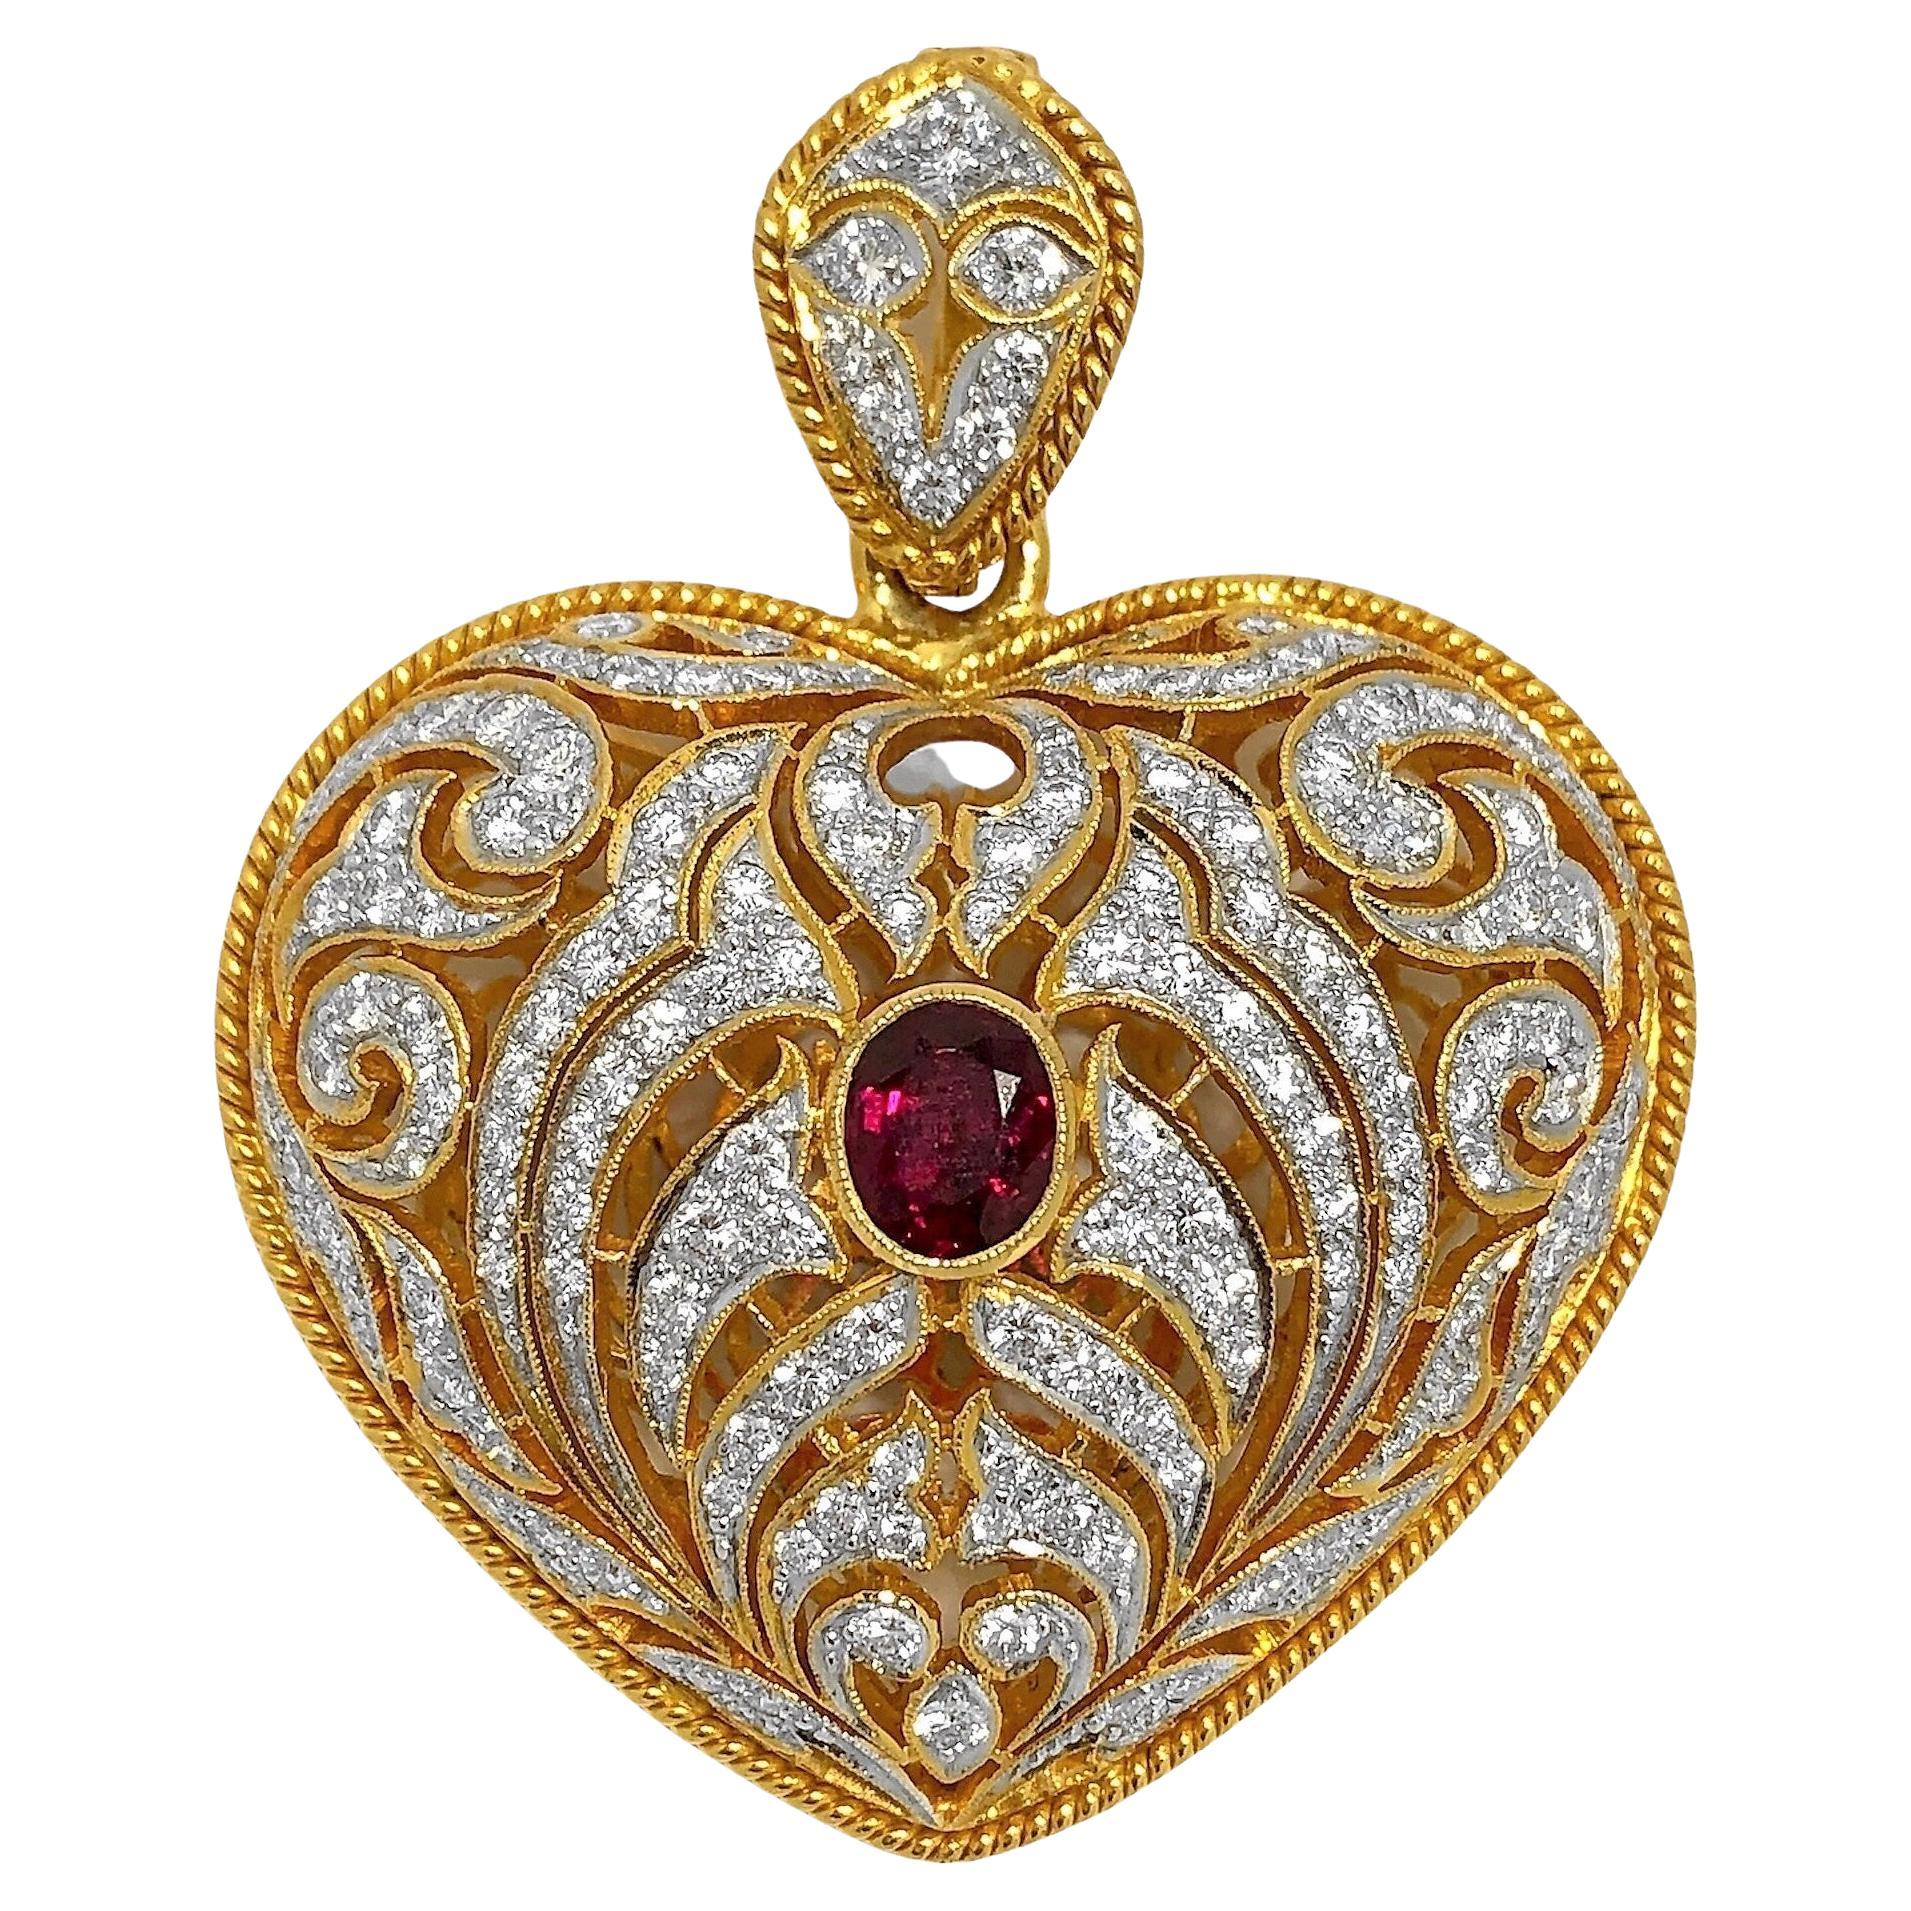 Grand pendentif en or percé à la main, incrusté de diamants et en forme de cœur avec centre en rubis